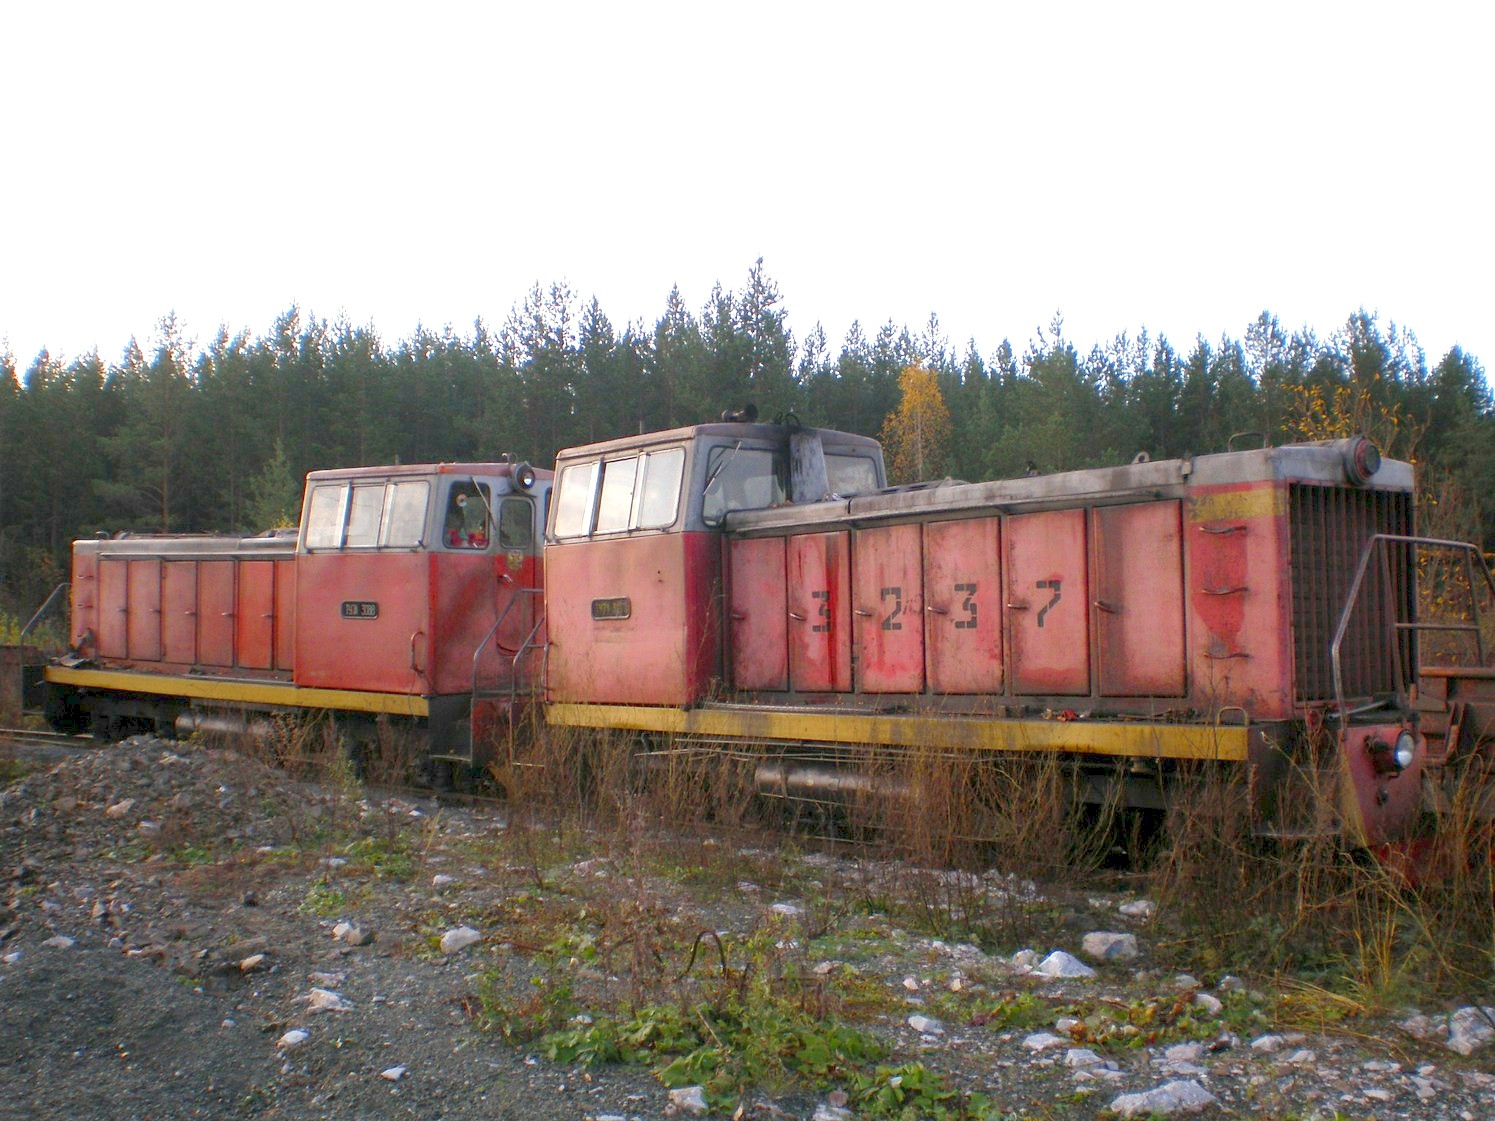 Висимо-Уткинская узкоколейная железная дорога  — фотографии, 
сделанные в 2007 году (часть 2)